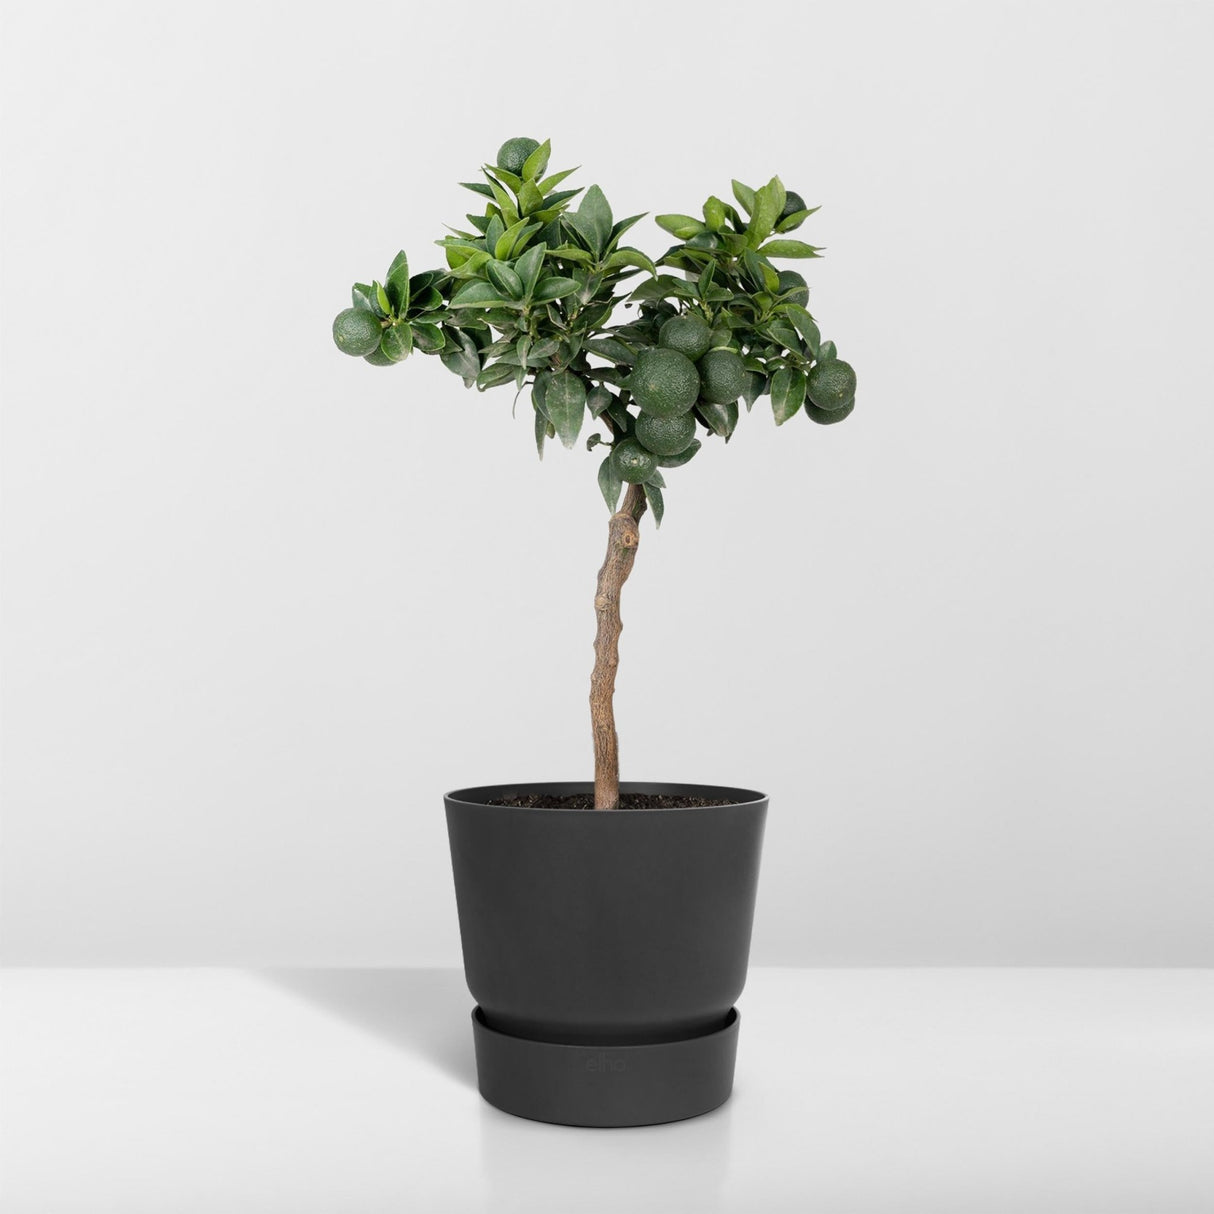 Livraison plante - Mandarinier - 45 cm - Ø15 - Arbuste fruitier - Plante d'extérieur